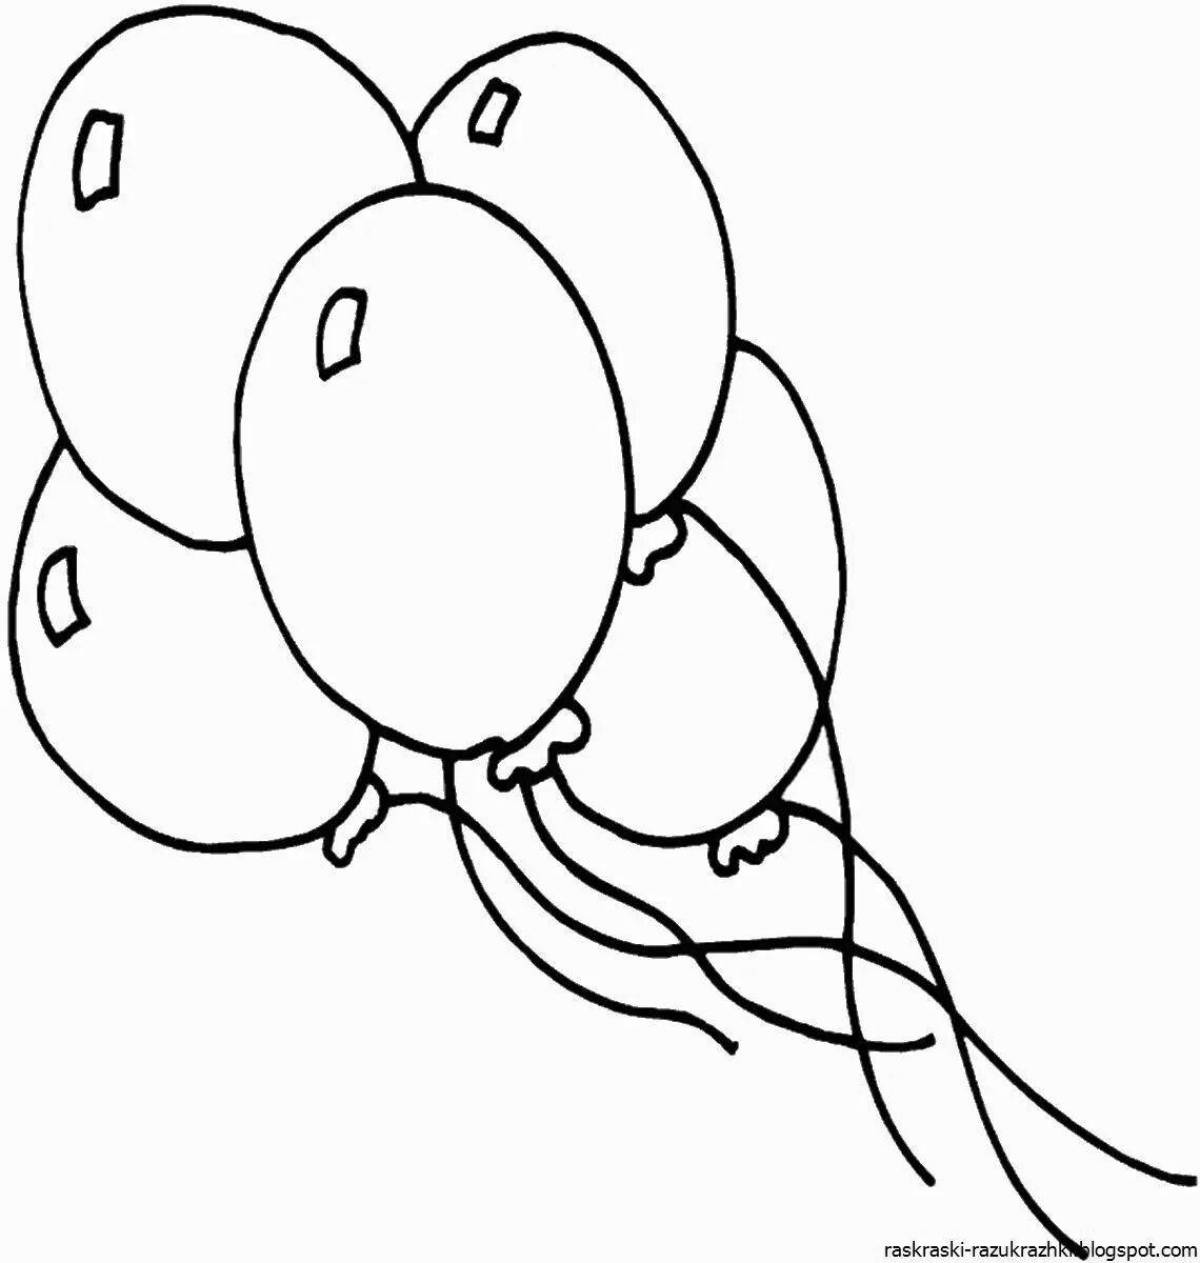 Праздничная раскраска с воздушными шарами для детей